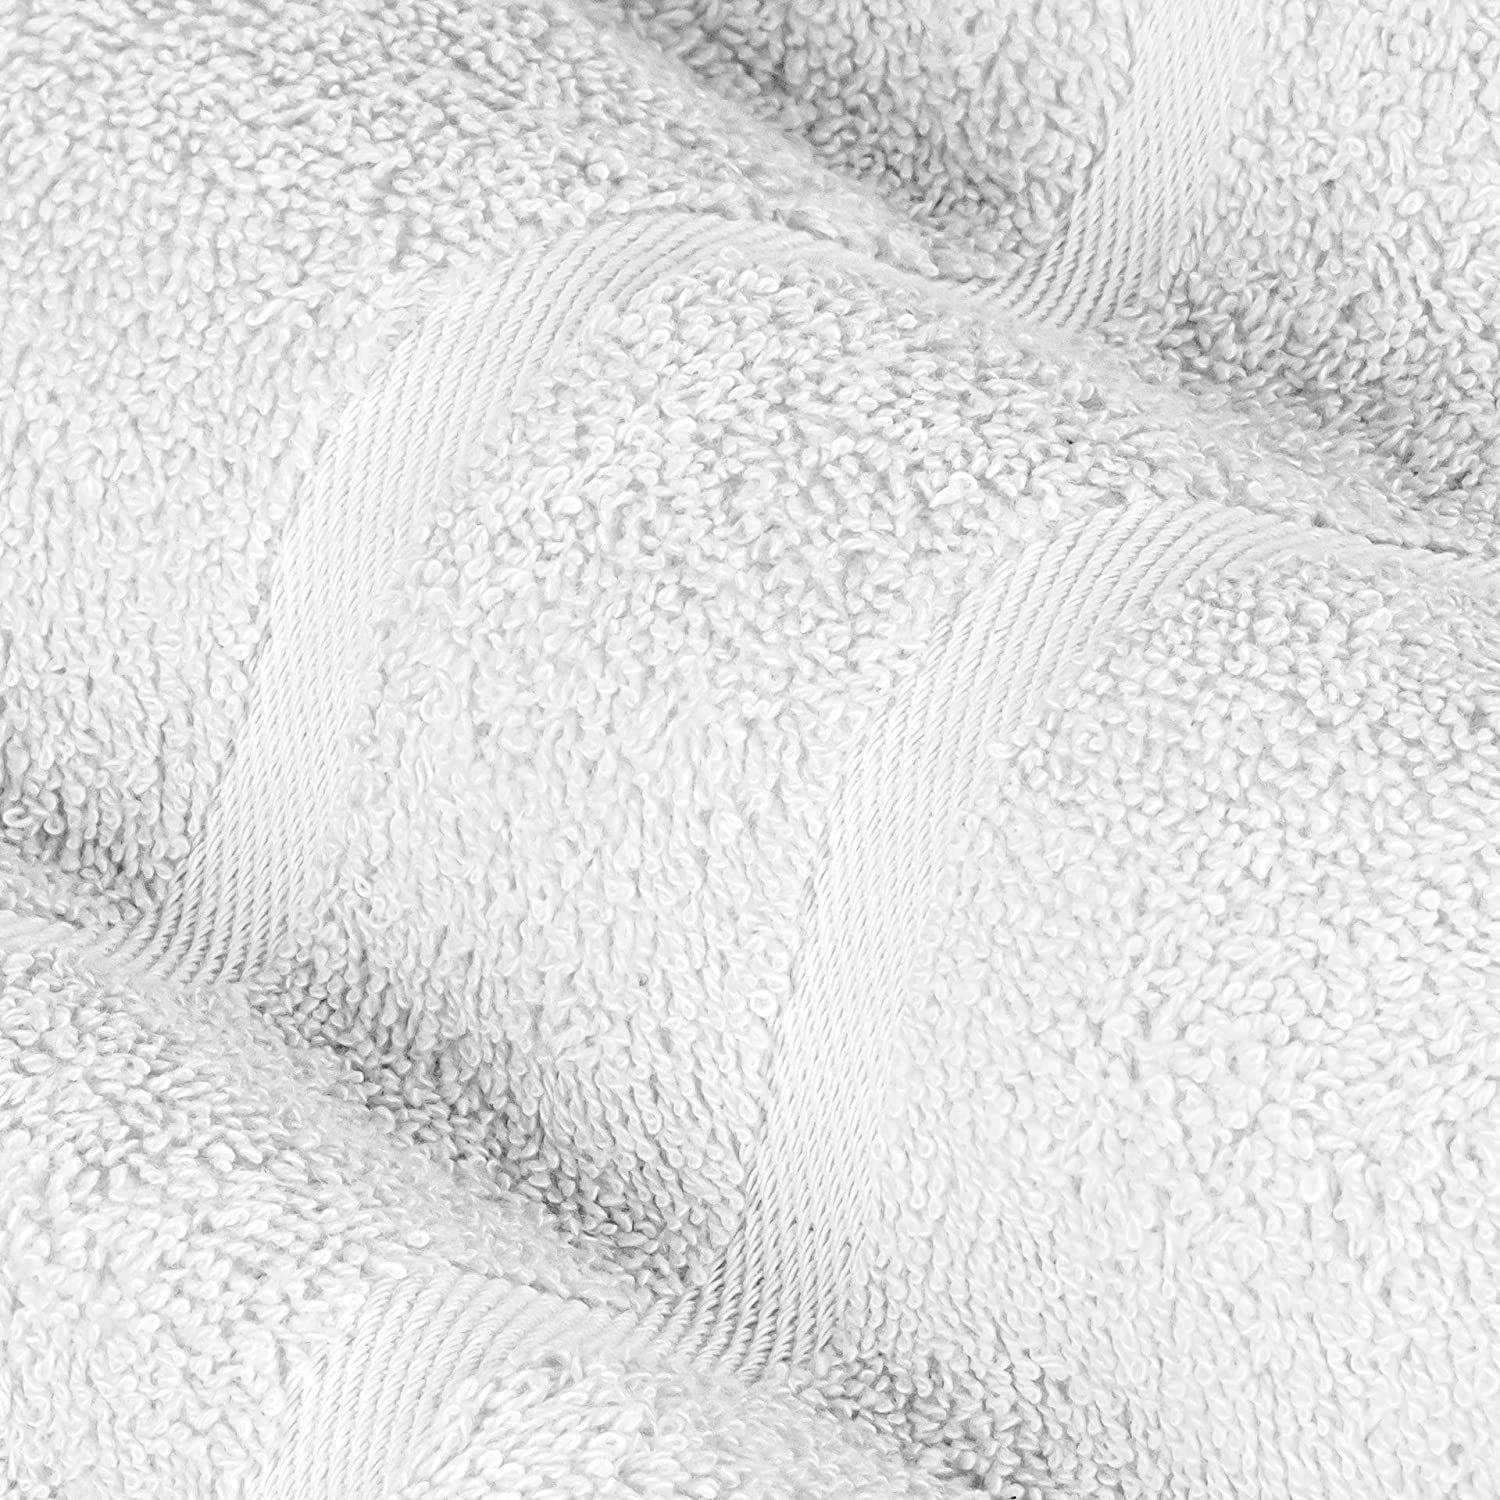 StickandShine Handtuch Pack, 1x 1x Baumwolle verschiedenen Farben Weiß Handtuch Gästehandtuch GSM Duschtuch 500 Waschlappen Set 6er Baumwolle Saunatuch 1x Handtuch in 500 GSM Teilig) 1x 100% SET Badetuch 1x als (6 100% Frottee 1x